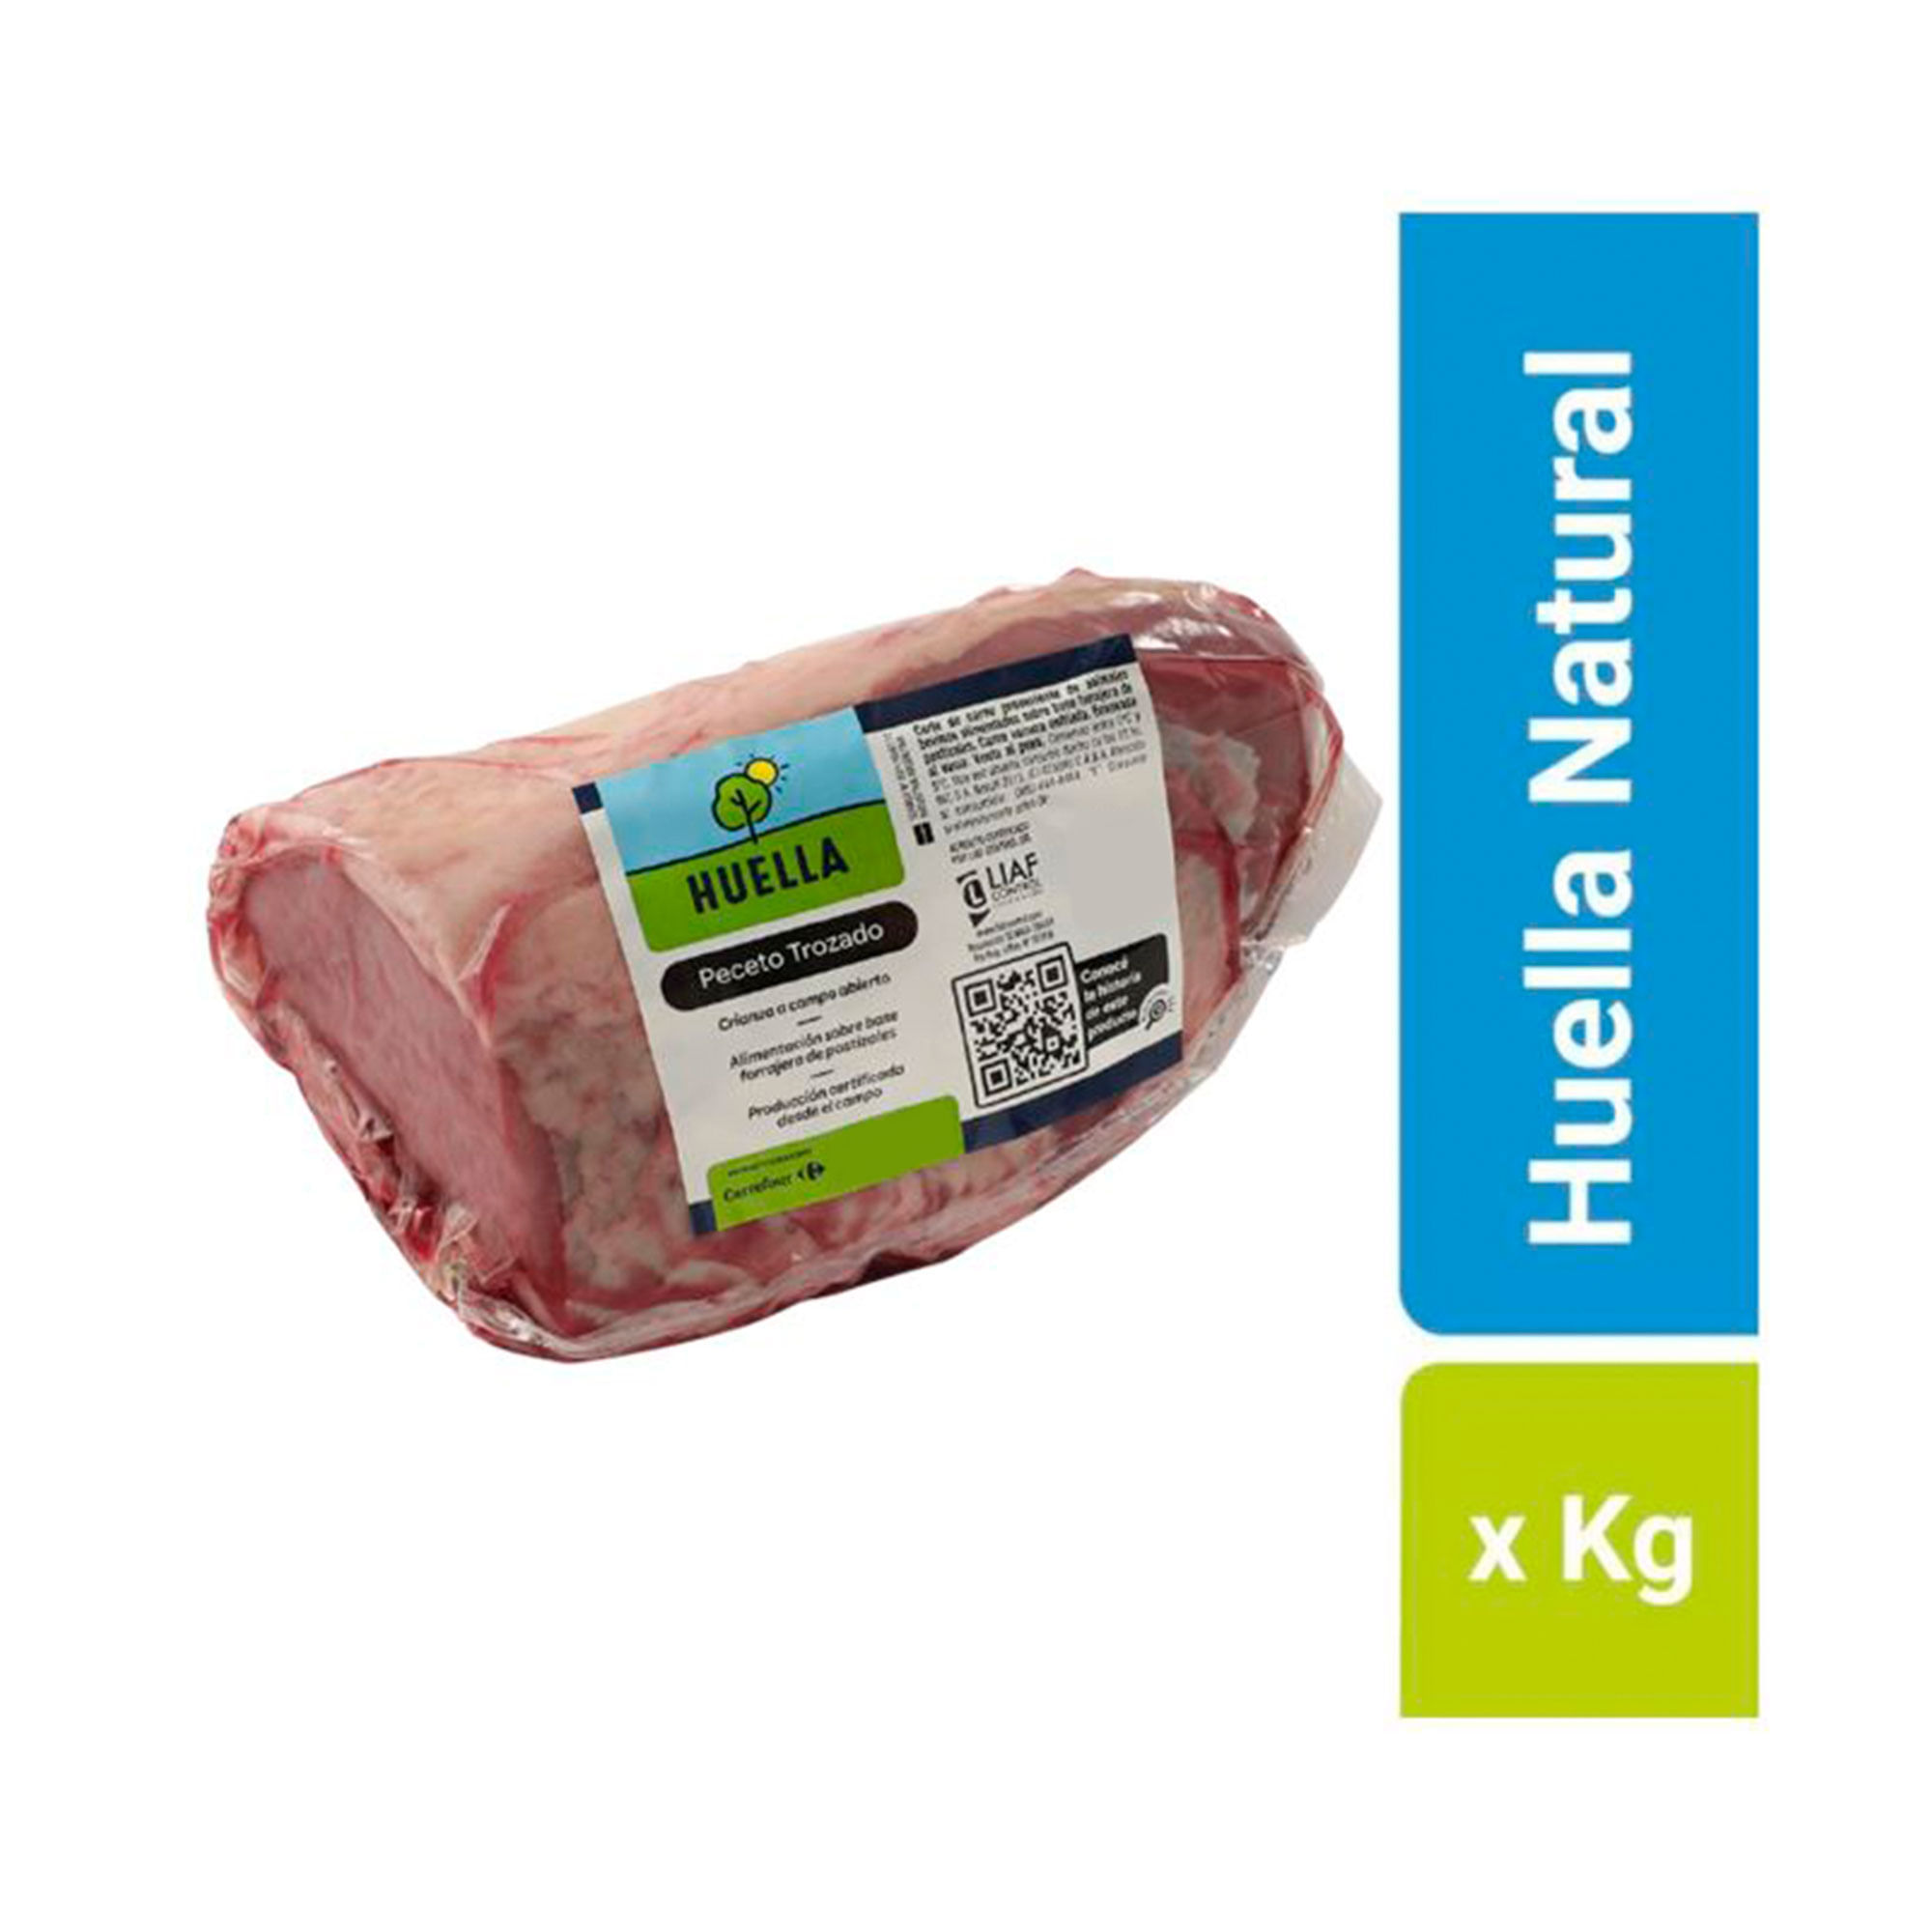 Huella Natural x kg. - Carrefour